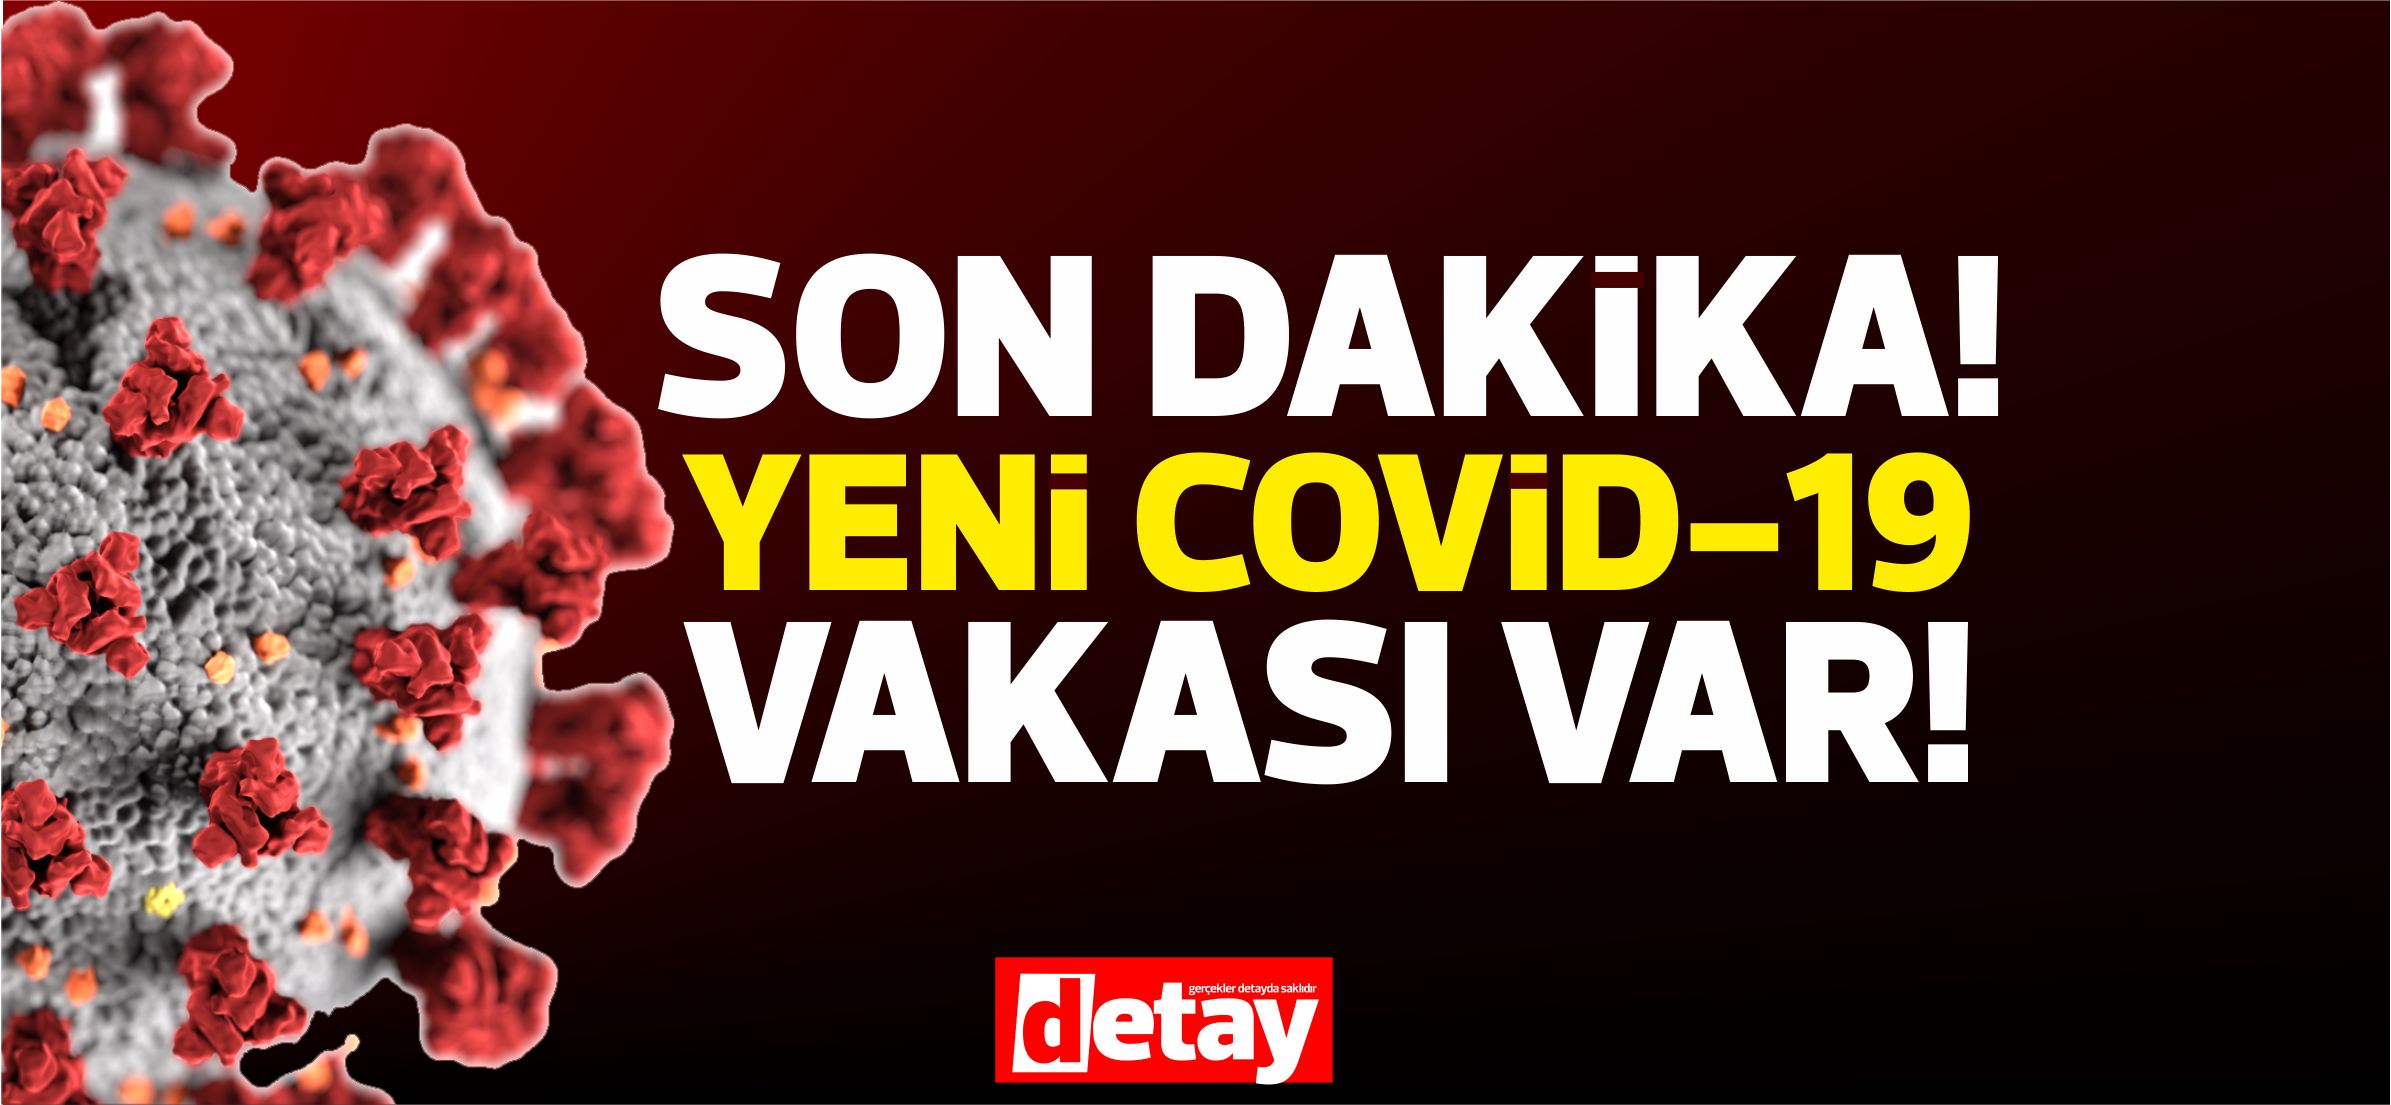 Akdoğan'da Covid-19 Pozitif vaka sayısı 8'e ulaştı (VİDEO HABER)